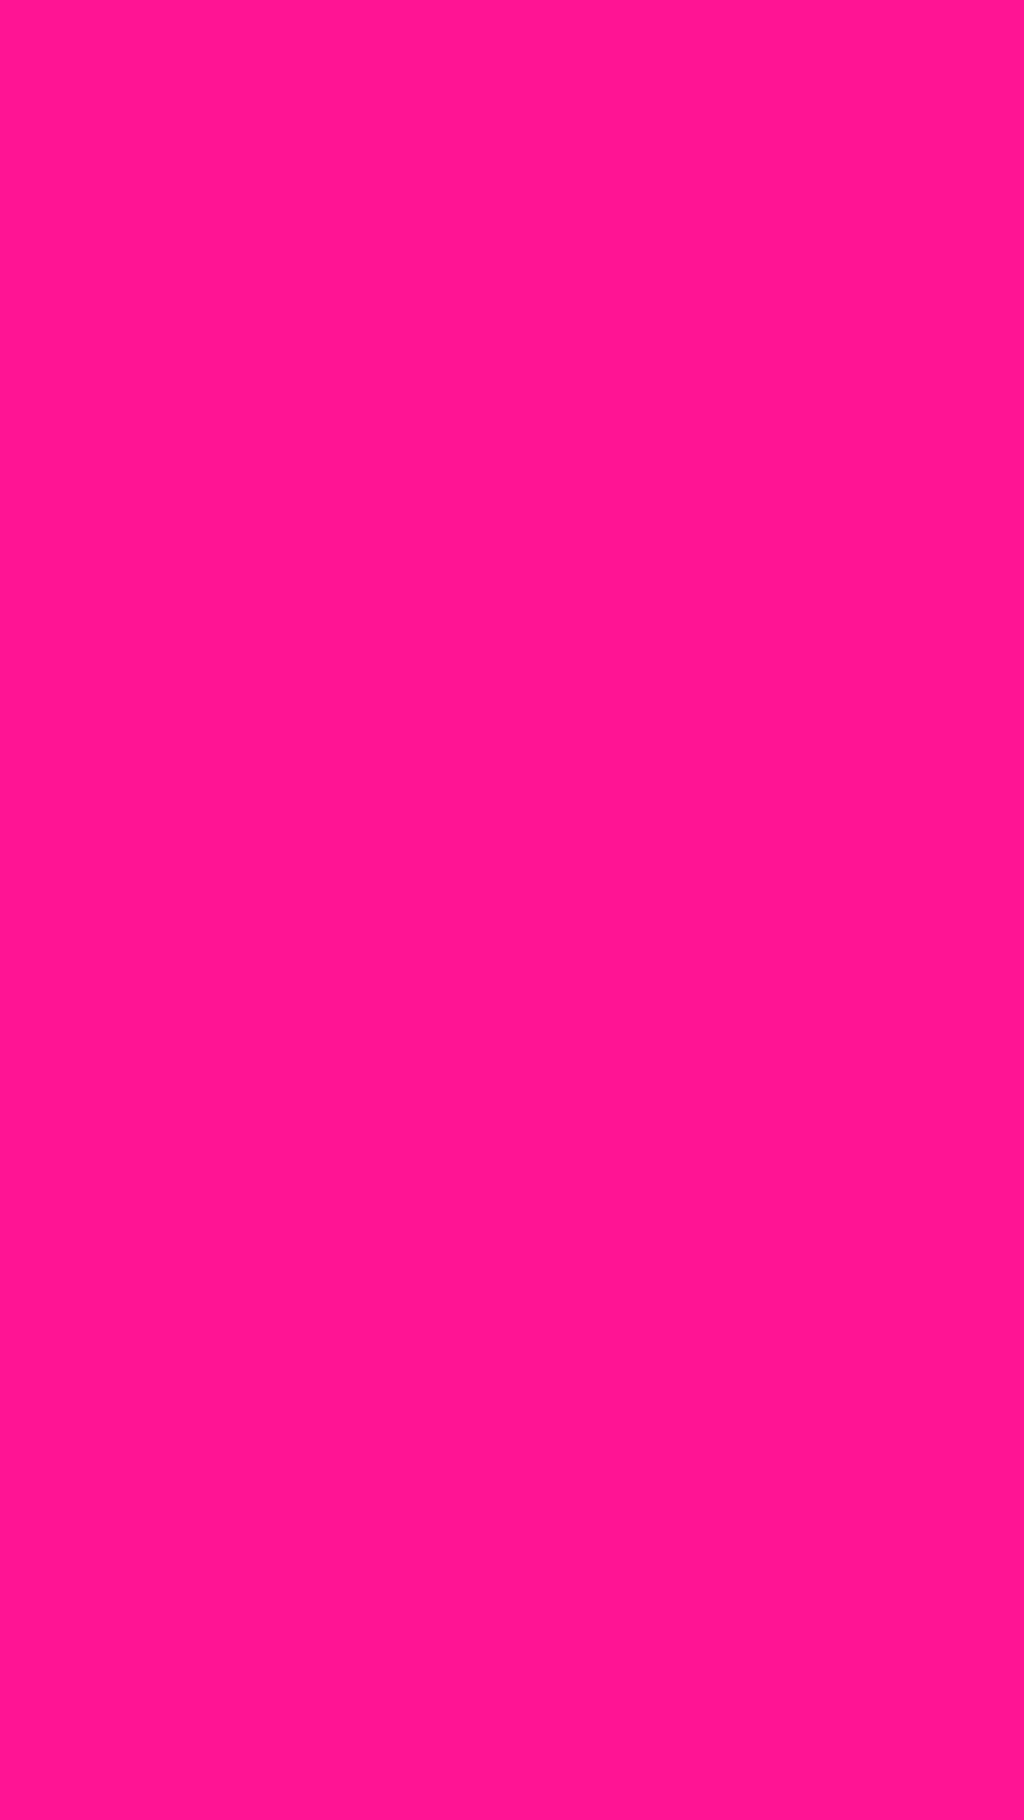 Hình nền màu hồng cute sẽ làm cho màn hình của bạn trông thật dễ thương và thu hút mọi ánh nhìn. Chọn hình nền màu hồng cute ngay để đem lại sự tươi vui và sáng tạo cho thiết bị của bạn.